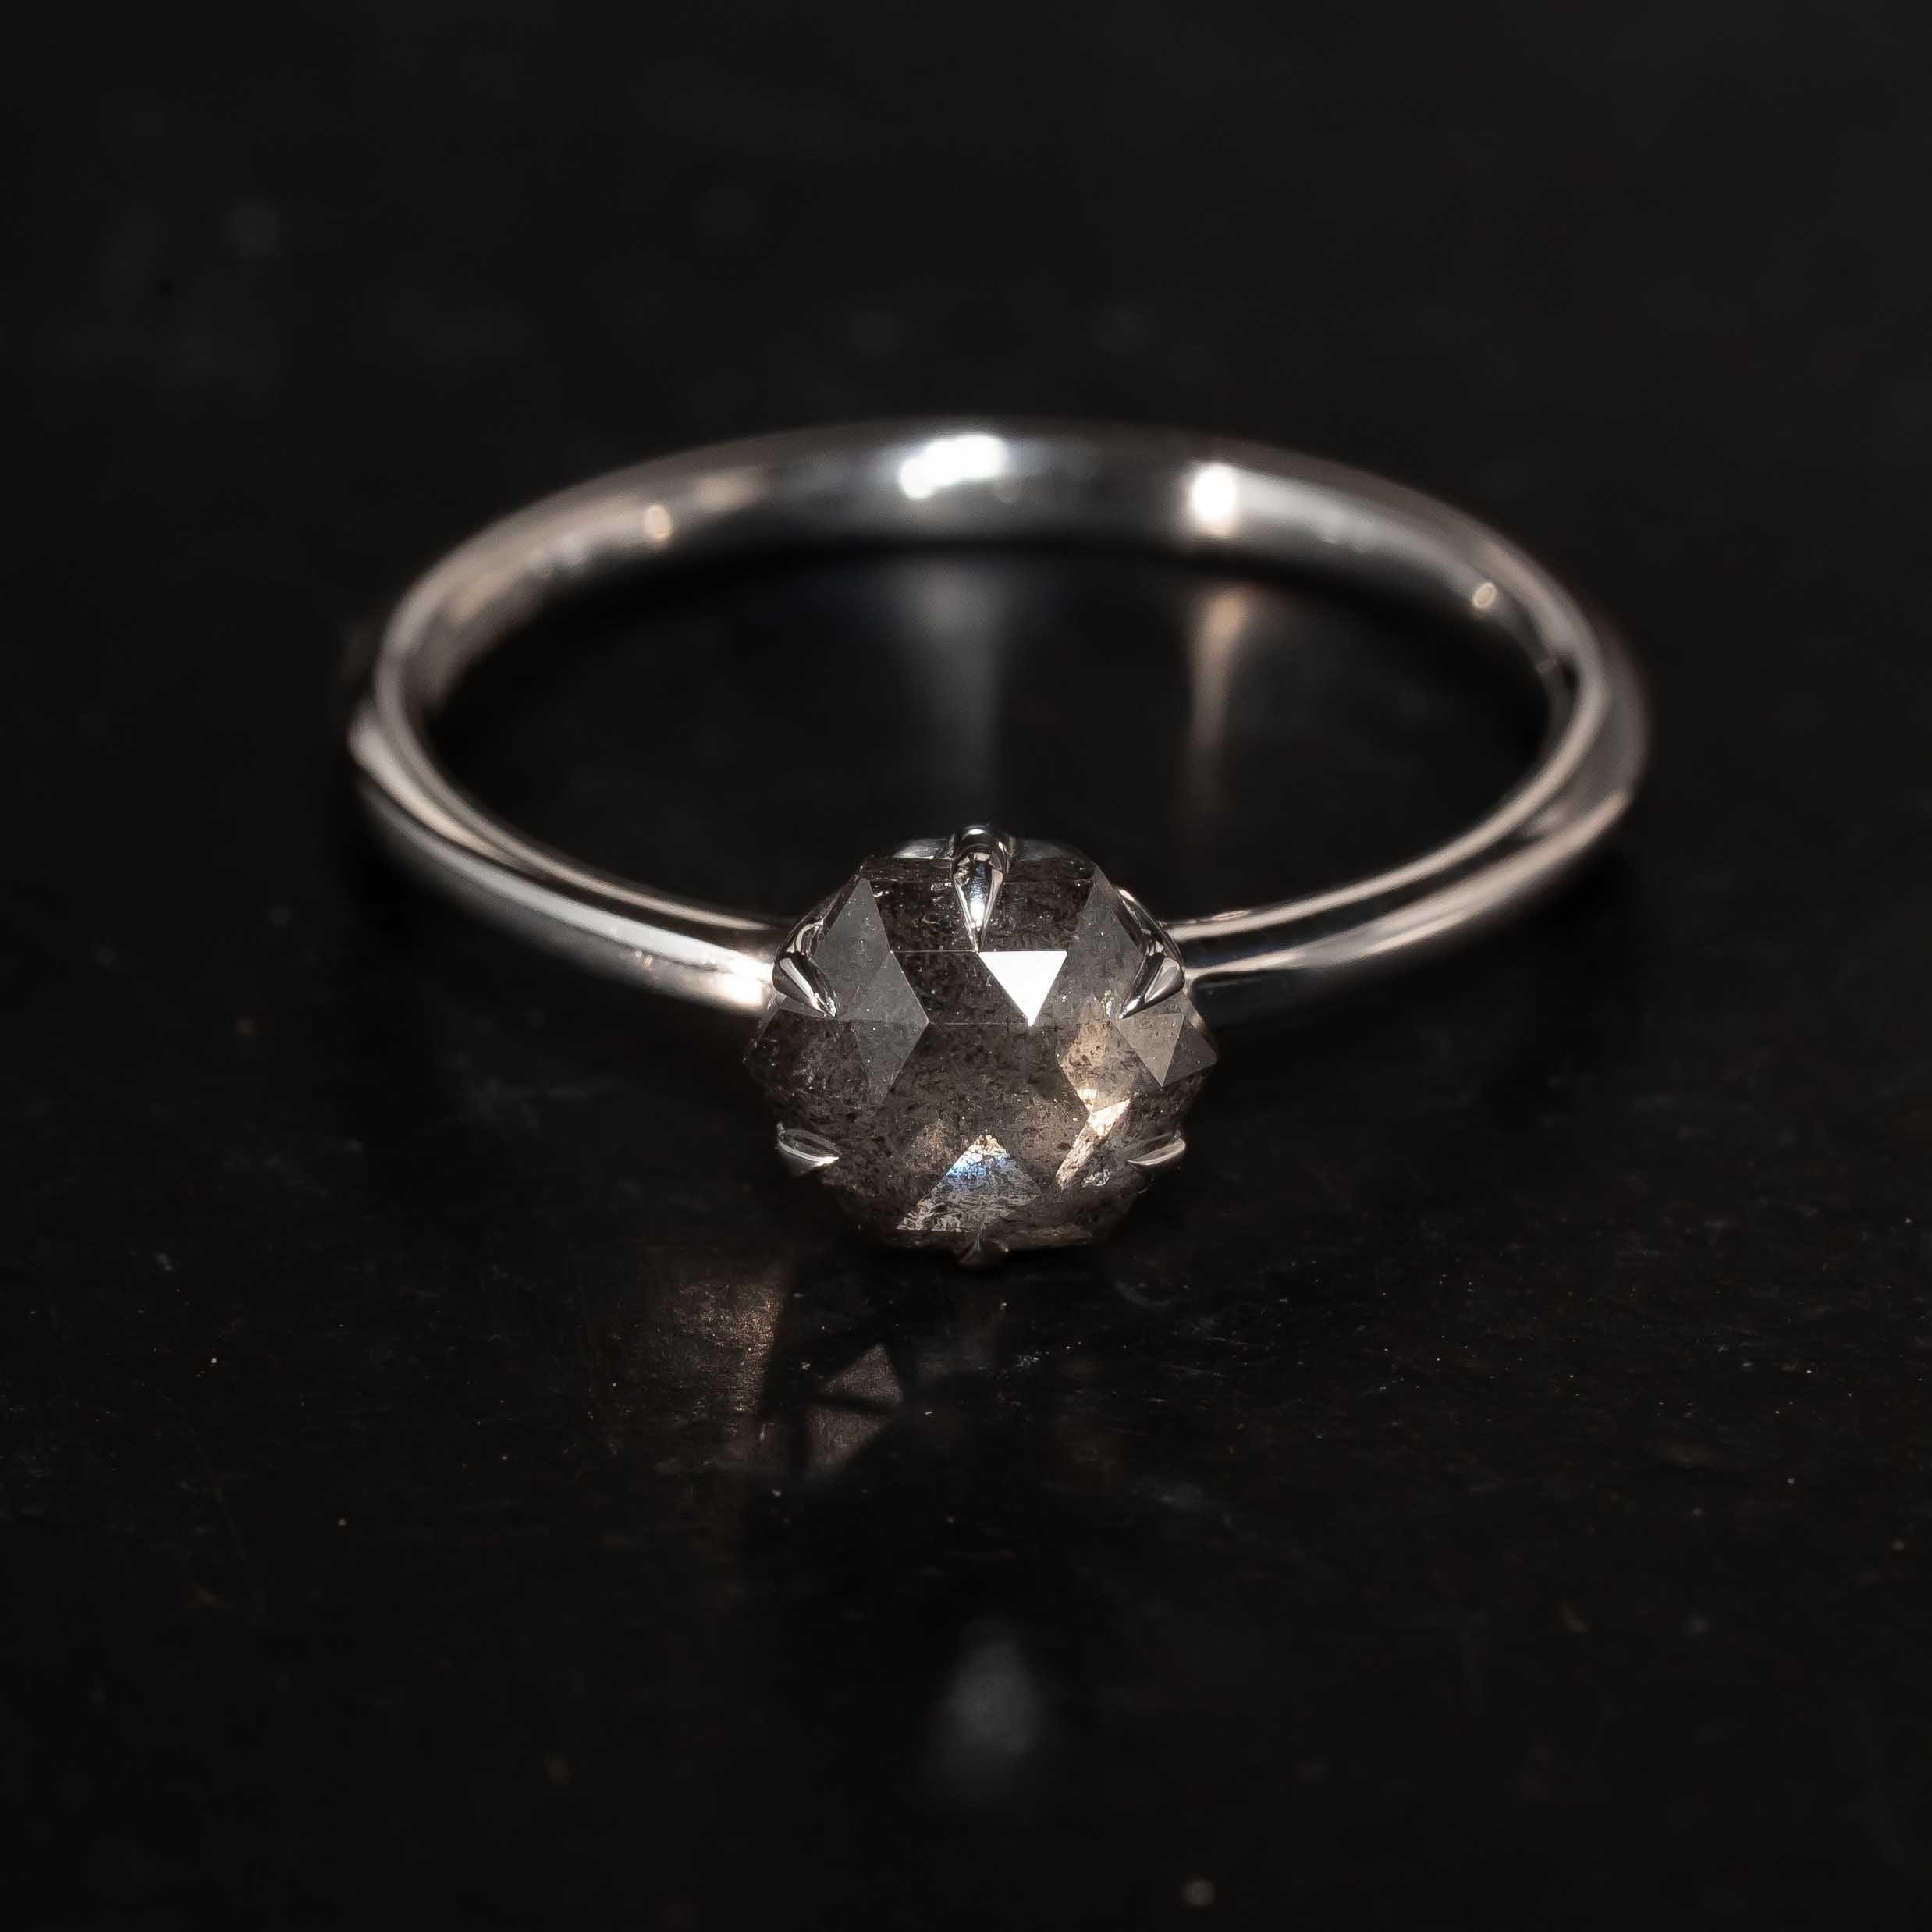 bespoke Salt & Pepper Diamond engagement Ring